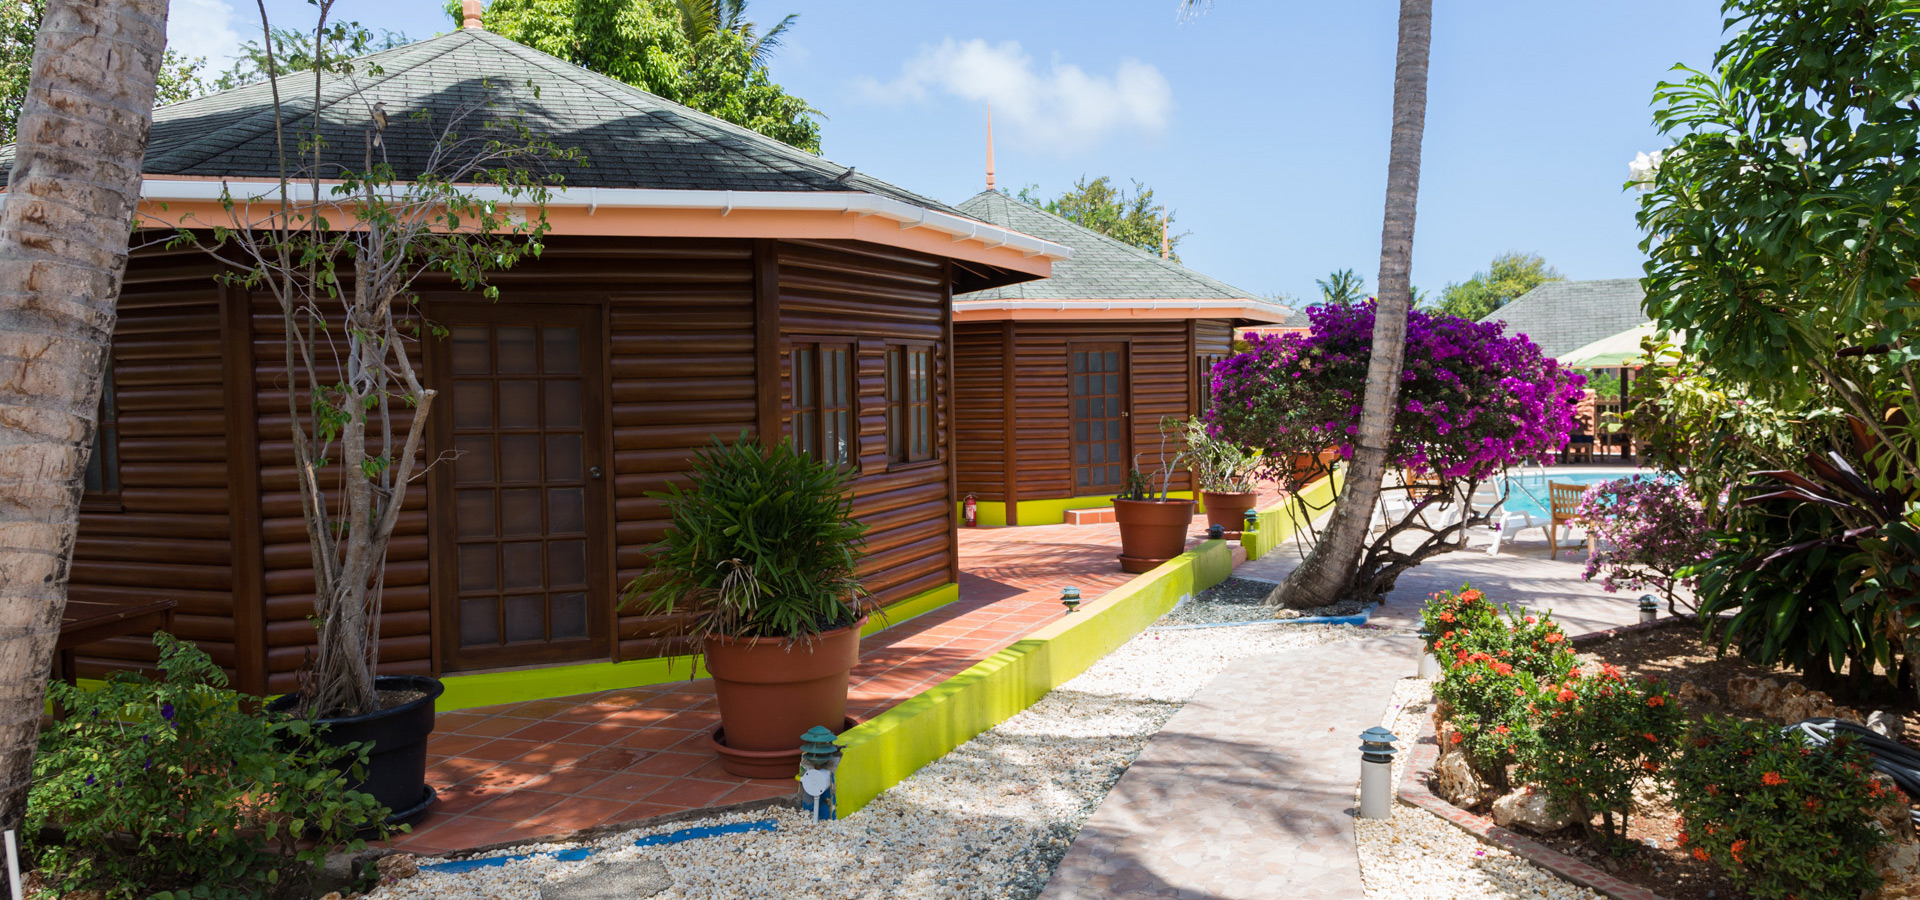 Tobago vacation accommodation at Shepherd's Inn & Restaurant